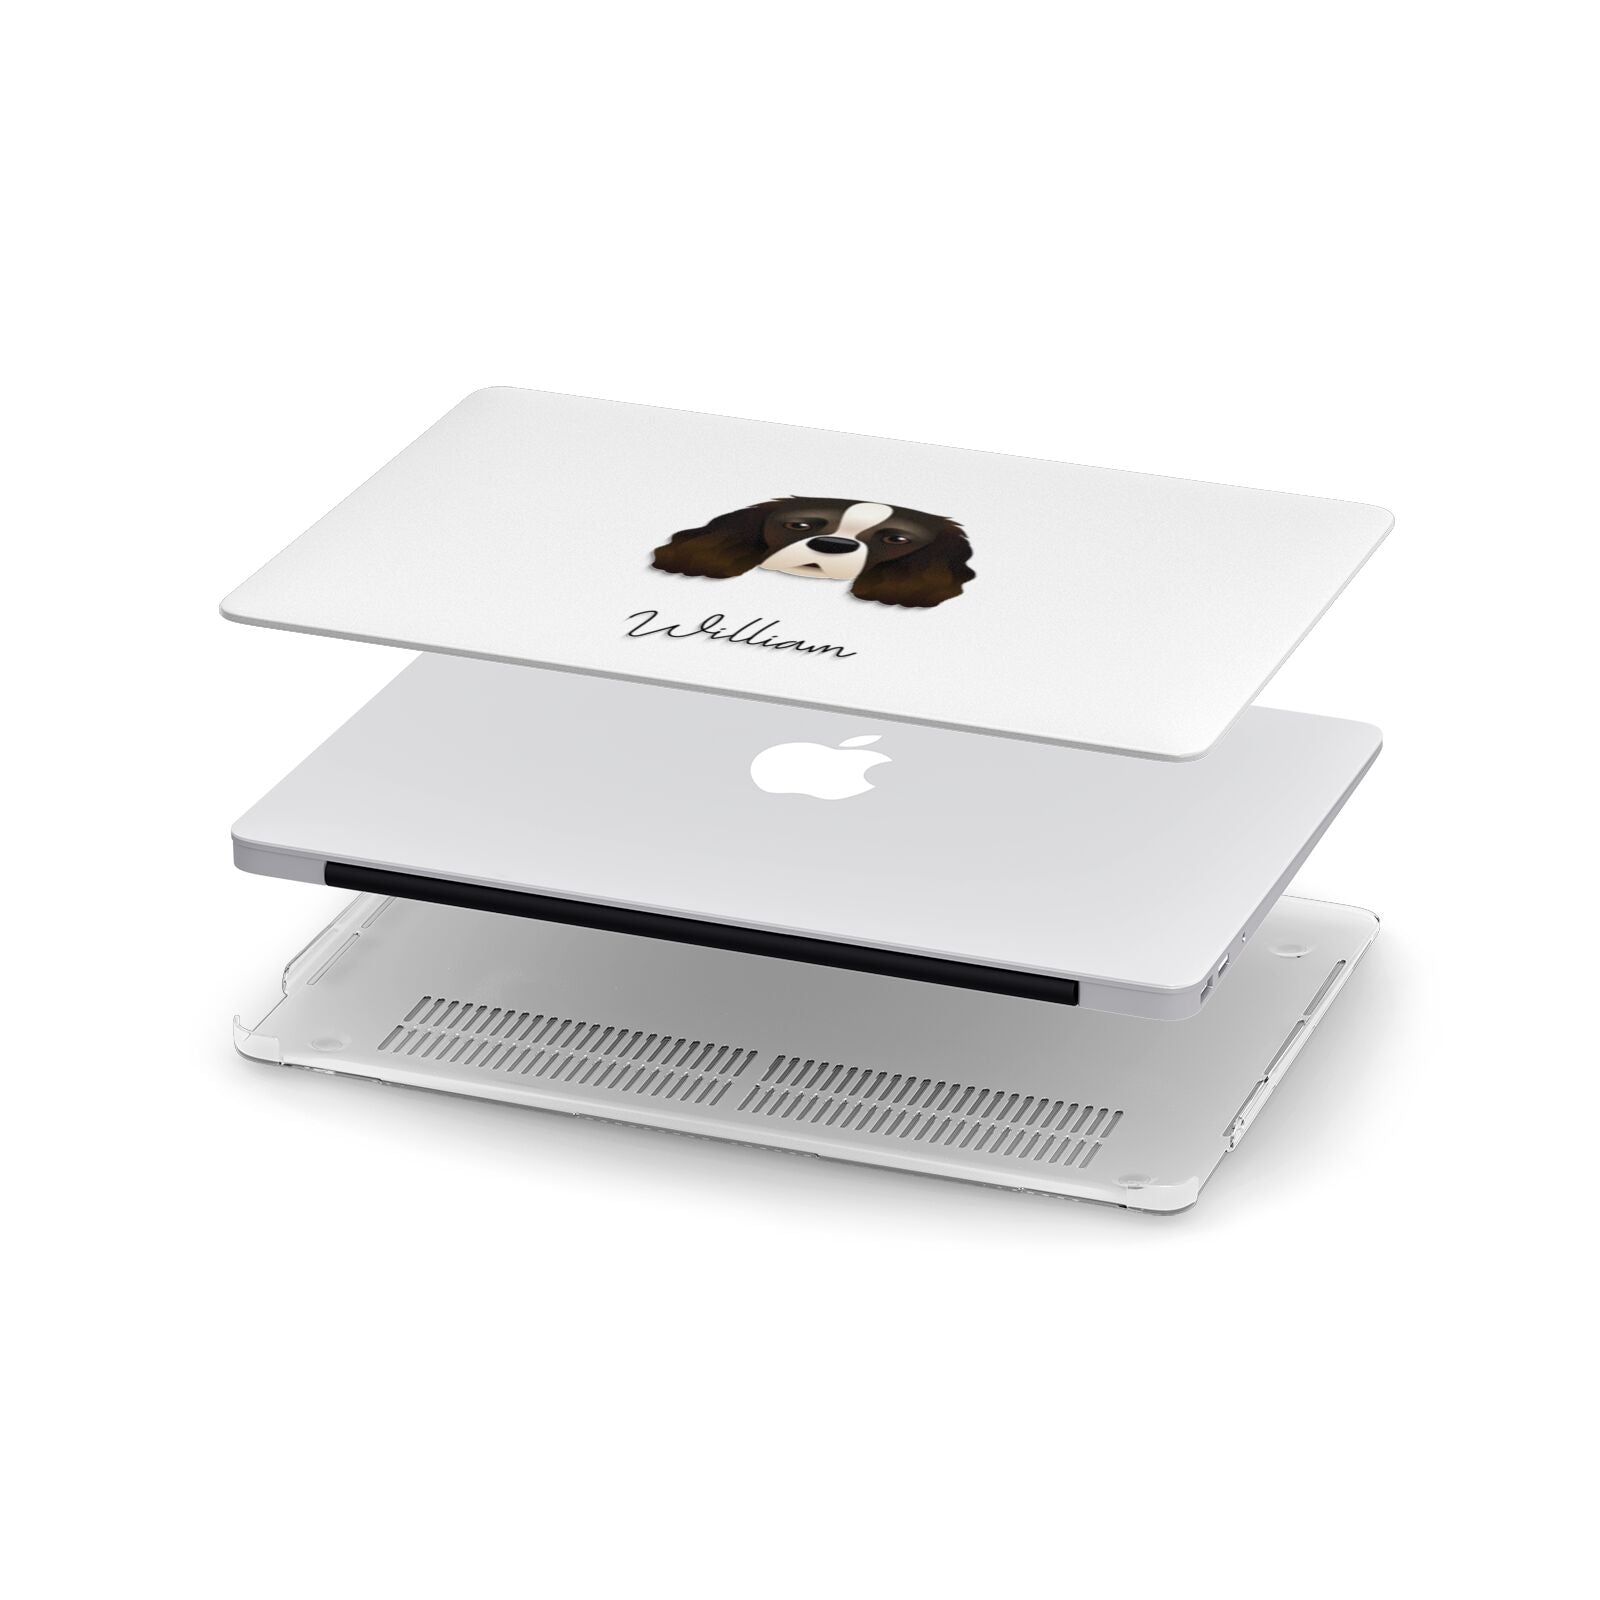 Cavalier King Charles Spaniel Personalised Apple MacBook Case in Detail